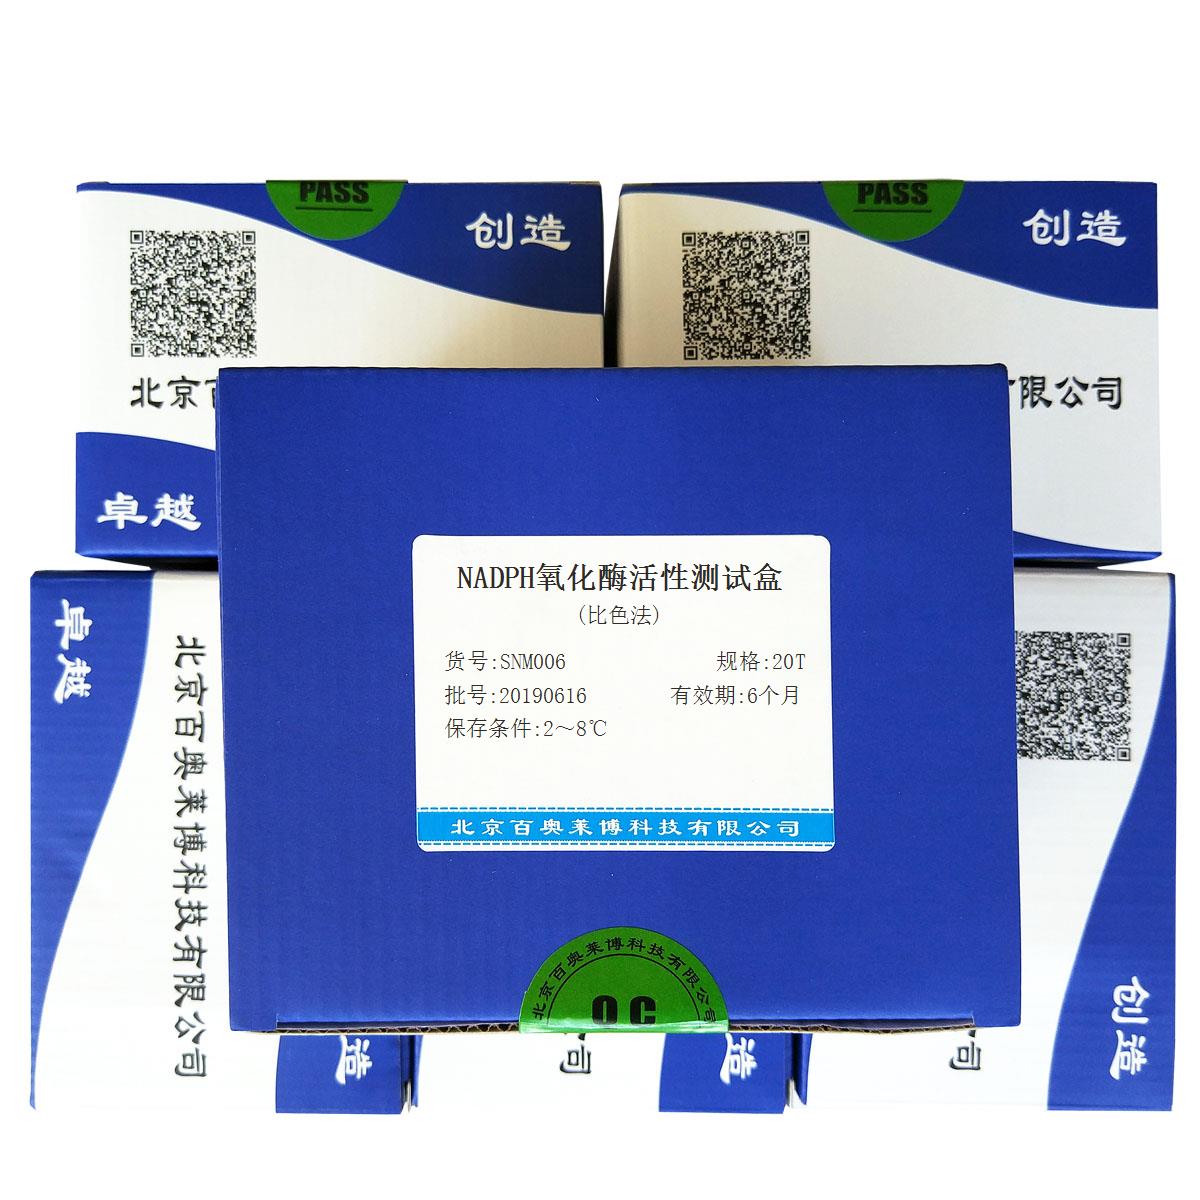 NADPH氧化酶活性测试盒(比色法)北京供应商